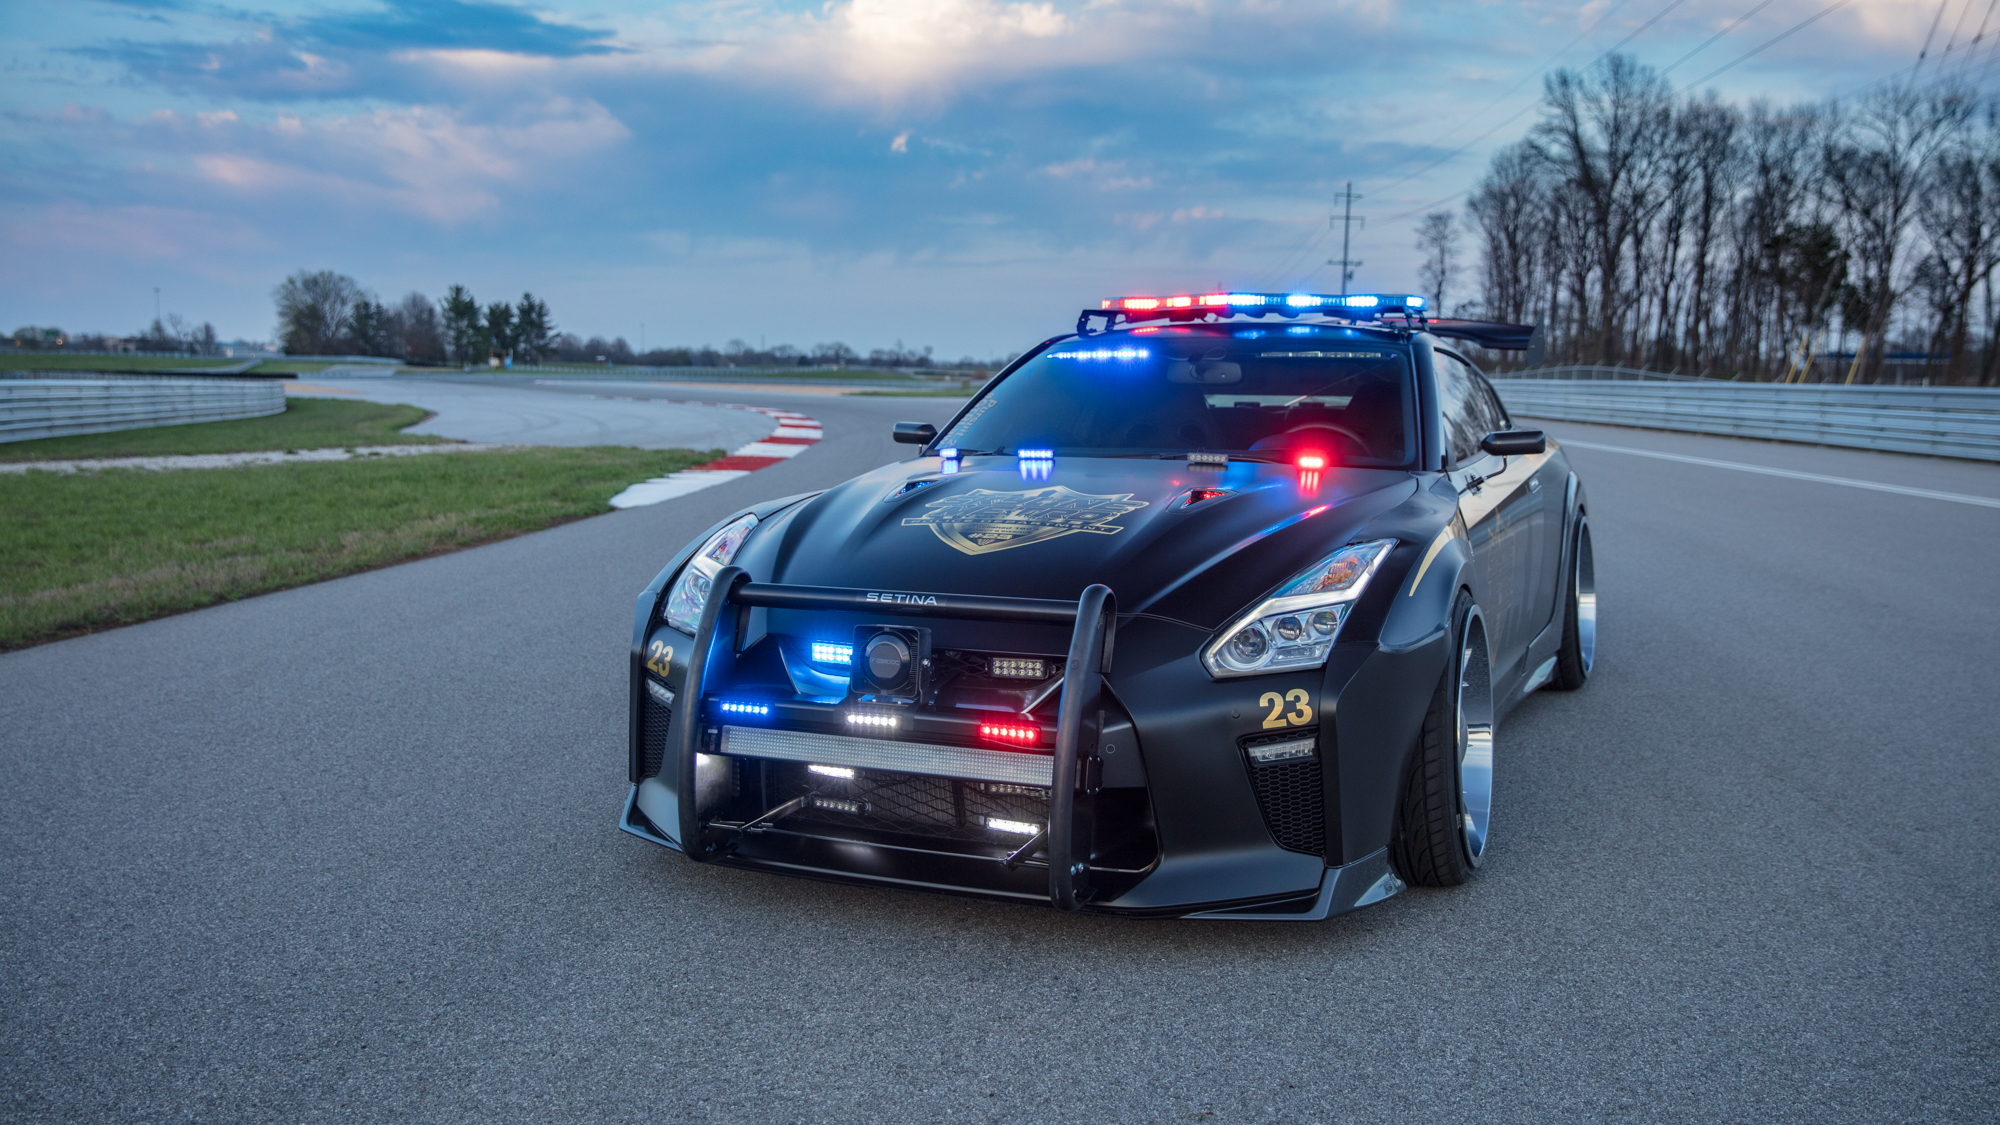 Nissan GT-R Police Pursuit